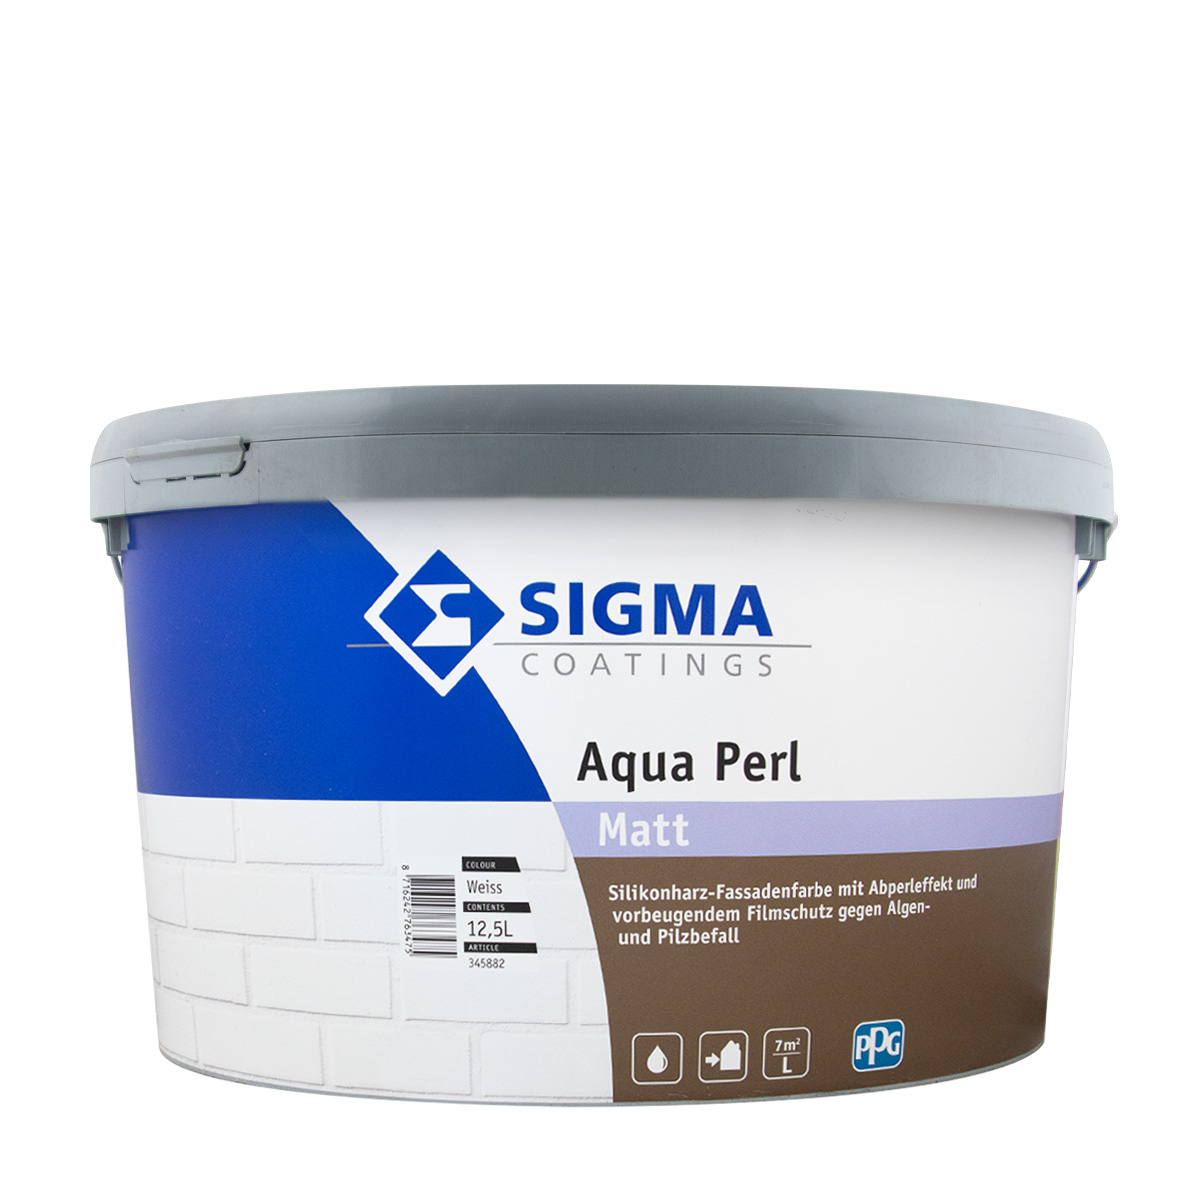 Sigma Aqua Perl Fassadenfarbe 12,5L weiss, Silikonharz-Fassadenfarbe